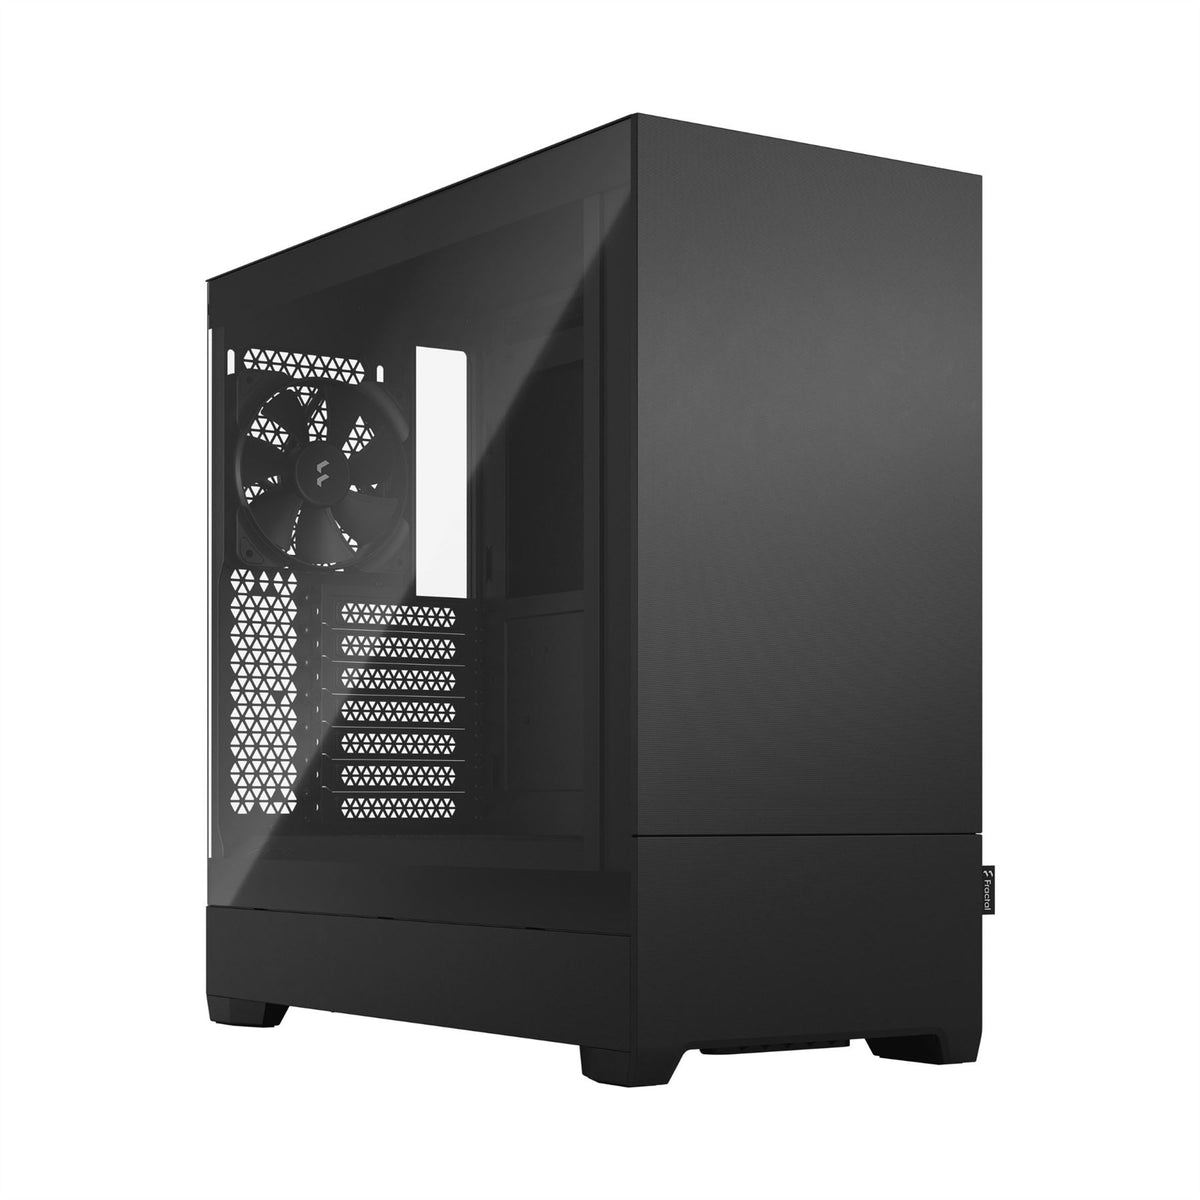 Fractal Design Pop Silent Tower Black PC Case